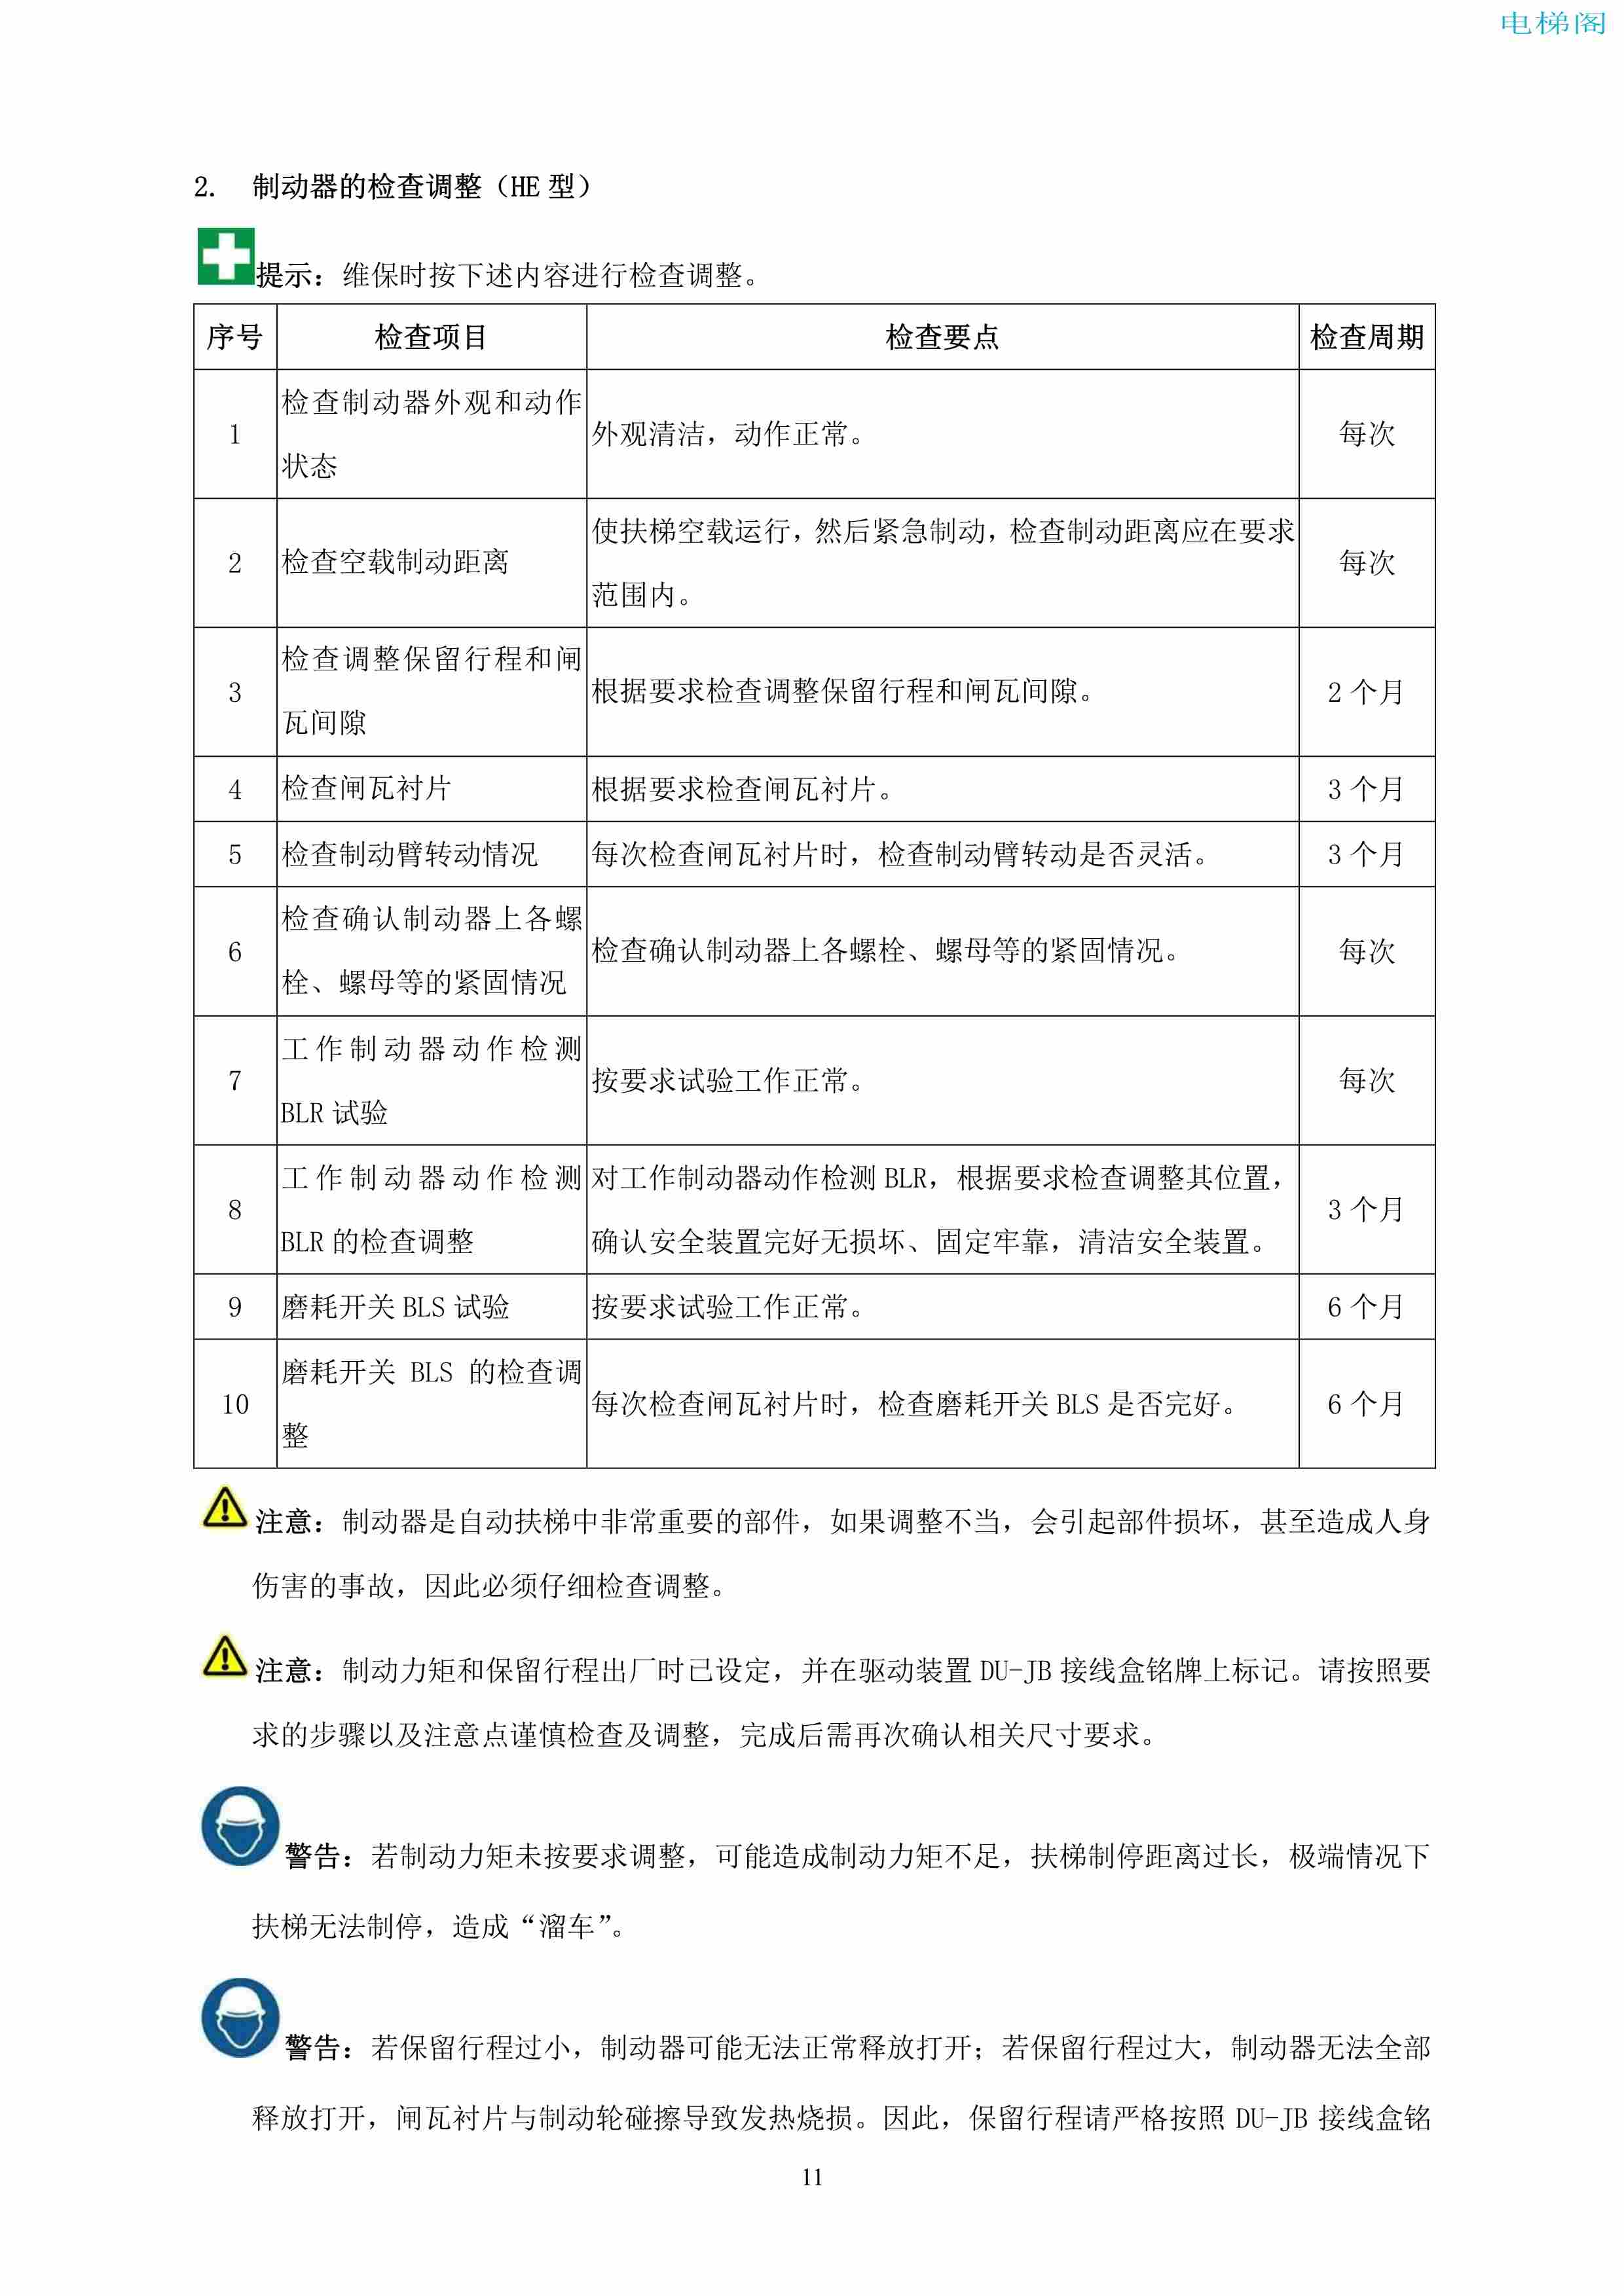 上海三菱电梯有限公司自动扶梯制动器维护作业要领汇编_12.jpg